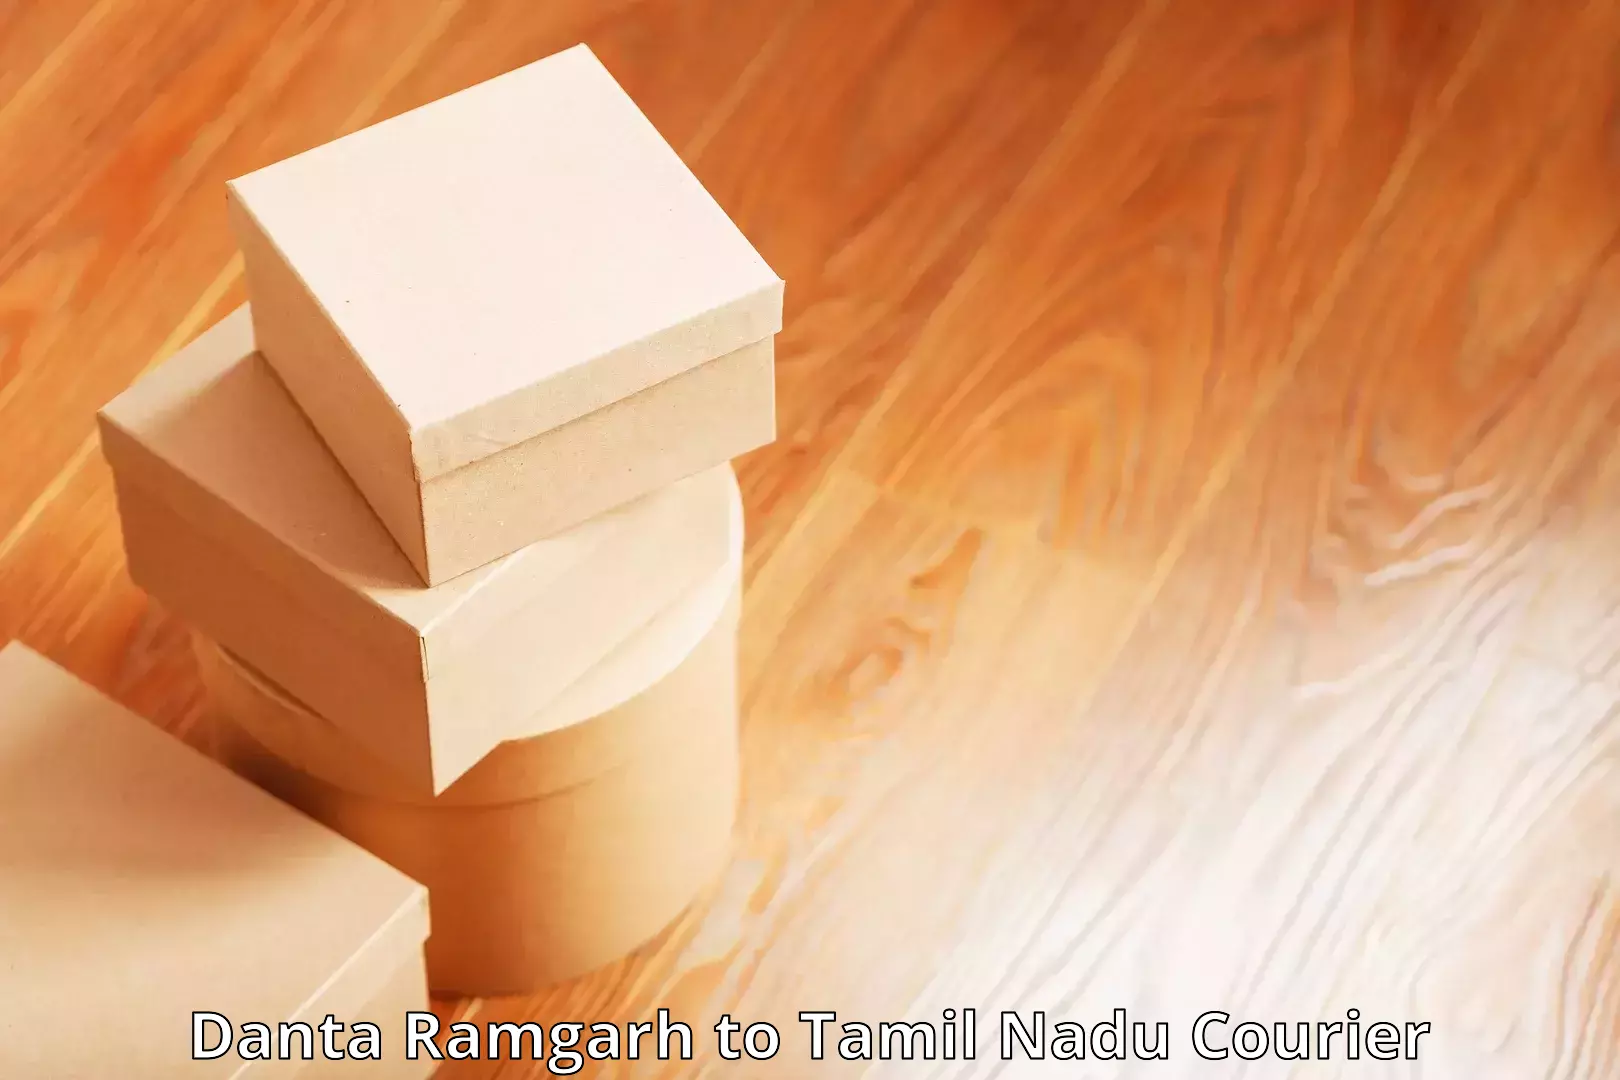 Flexible delivery schedules Danta Ramgarh to Vallioor